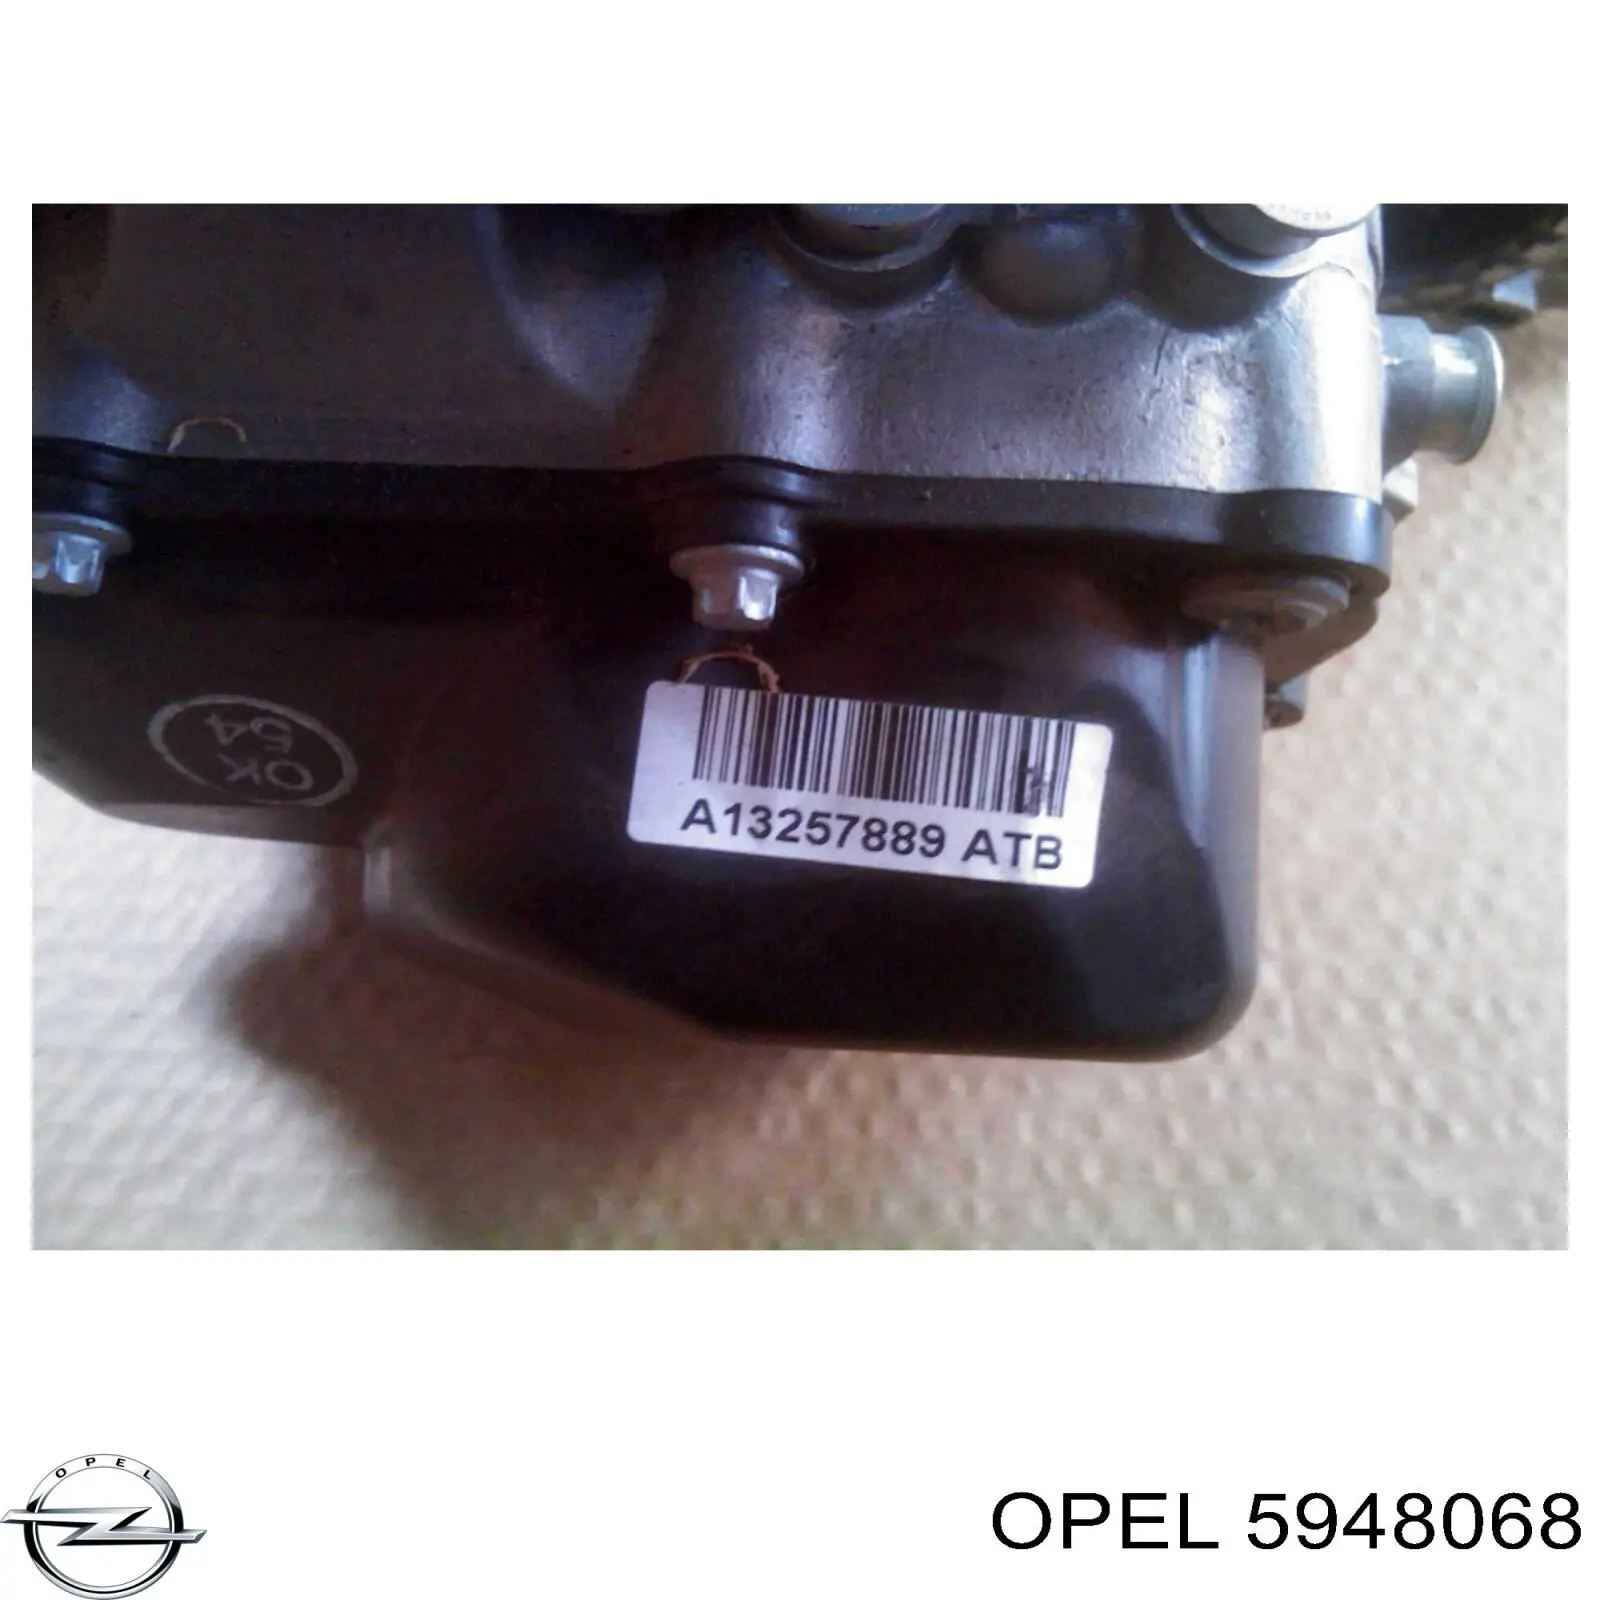 5948068 Opel bomba de dirección